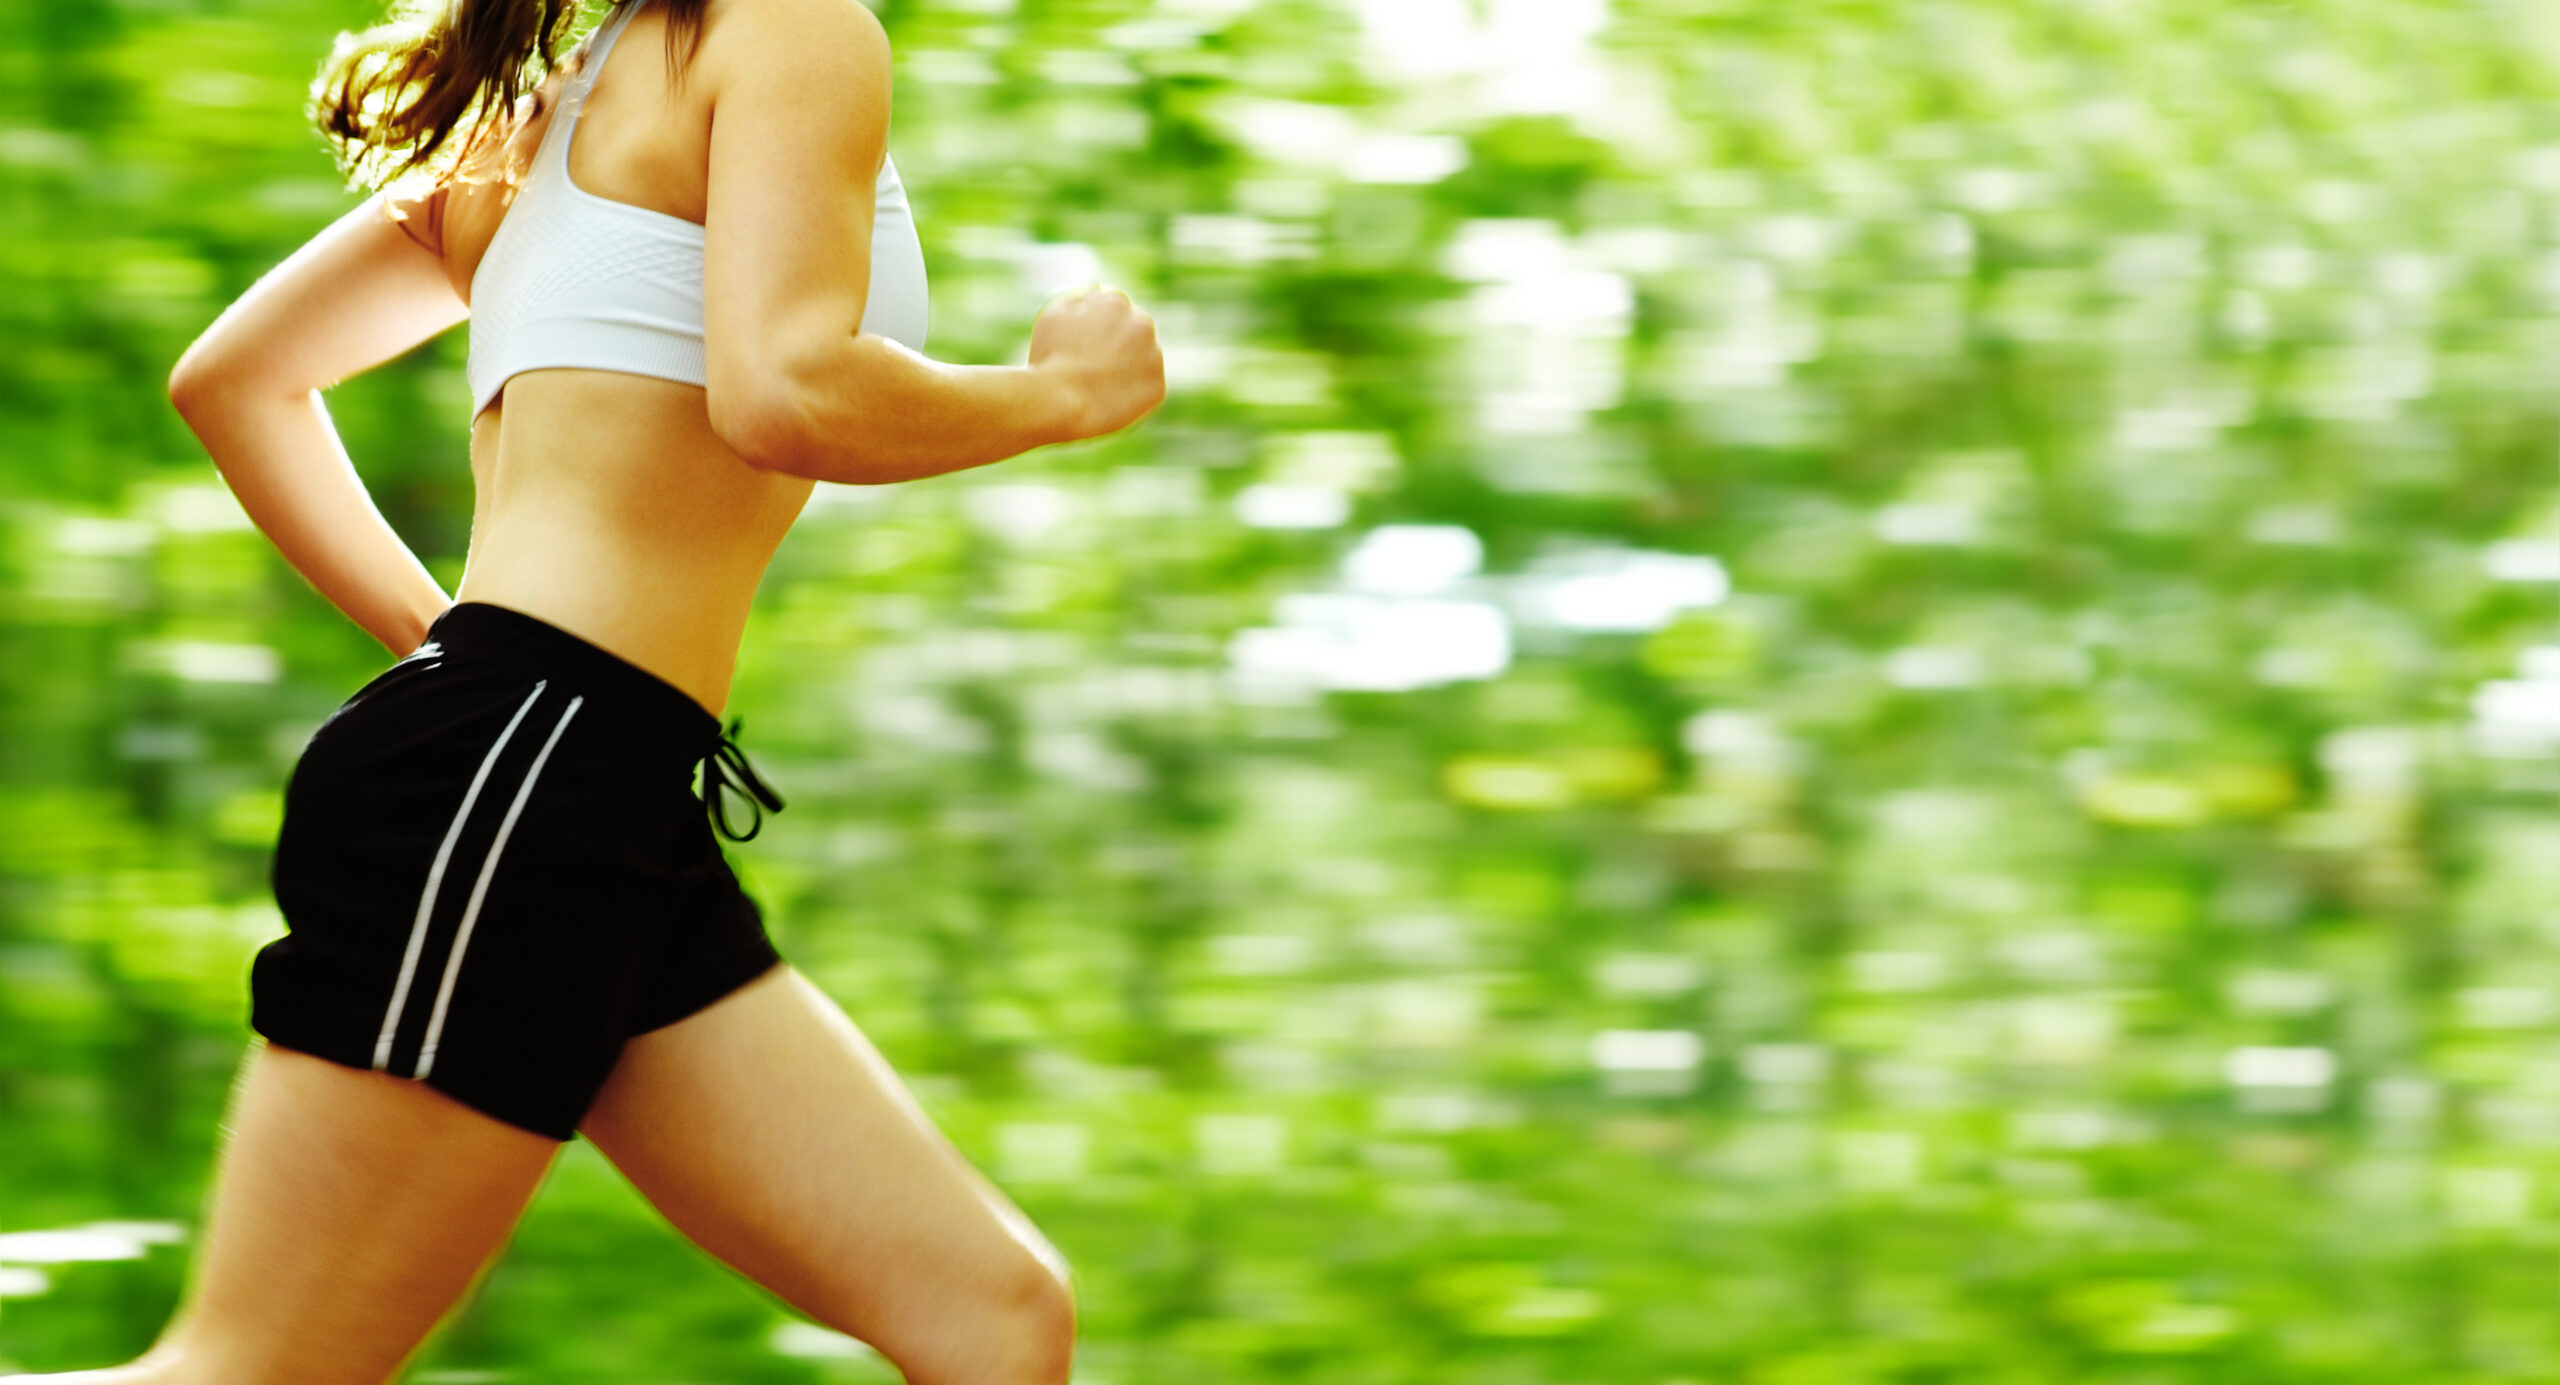 Green Workout & Running Shorts for Women